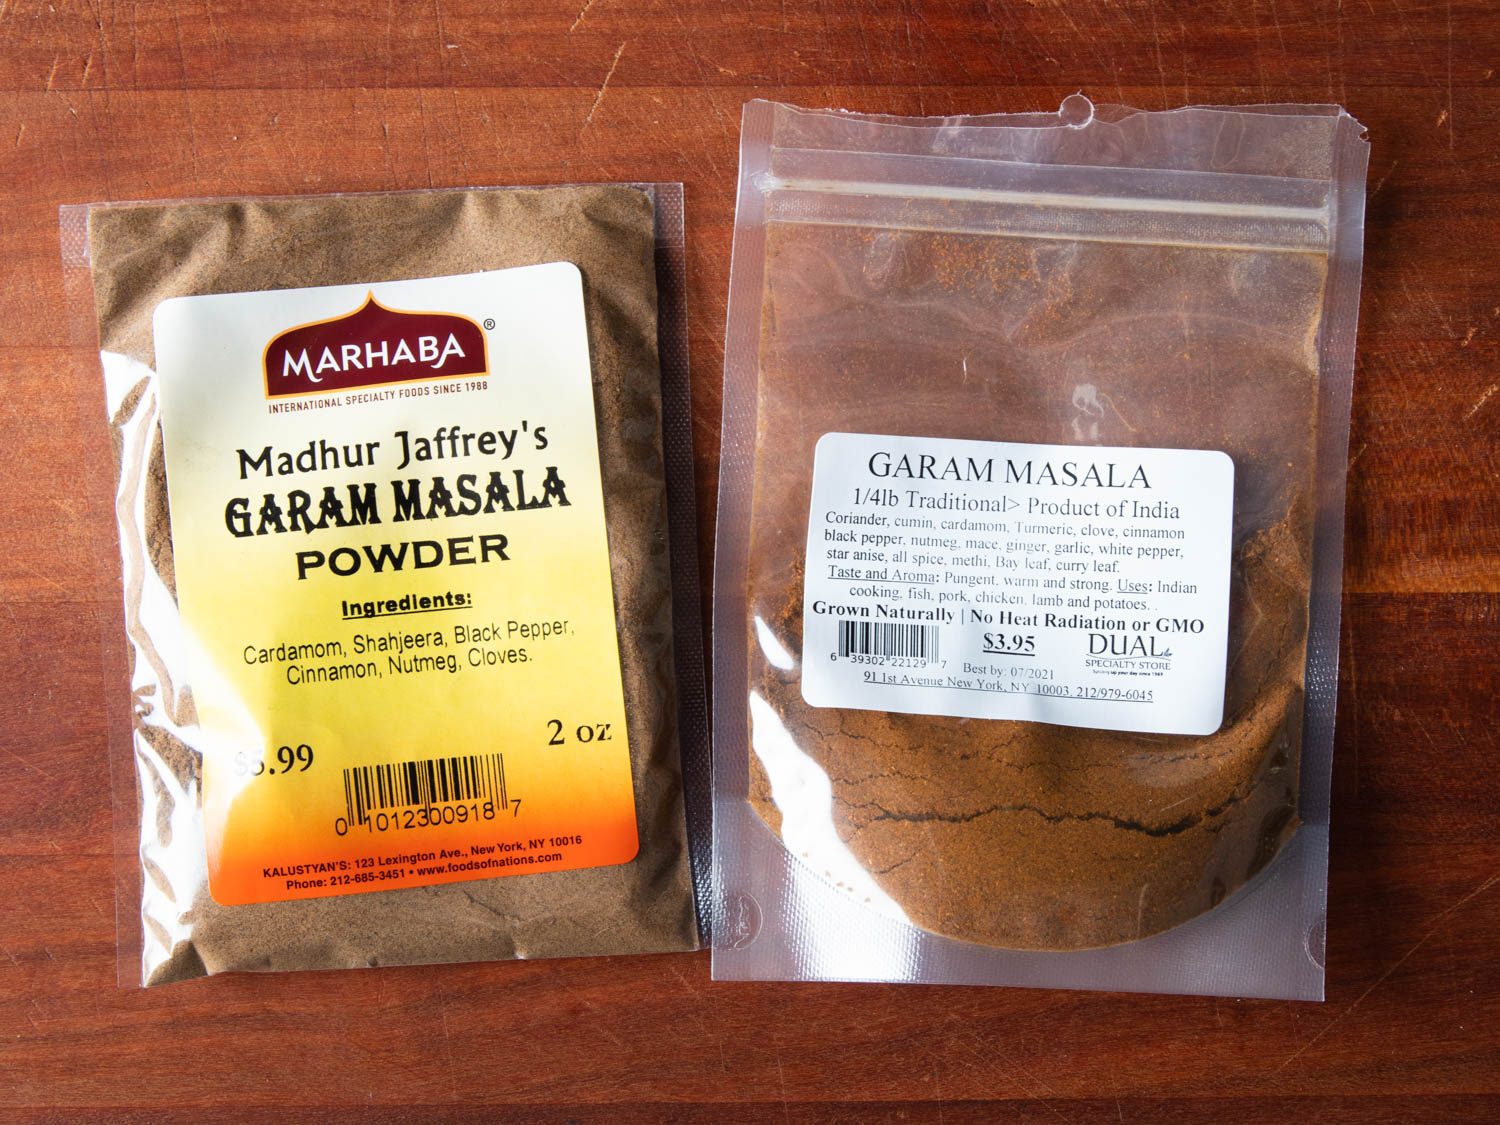 Comparaison côte à côte des listes d'ingrédients pour deux garam masalas achetés en magasin